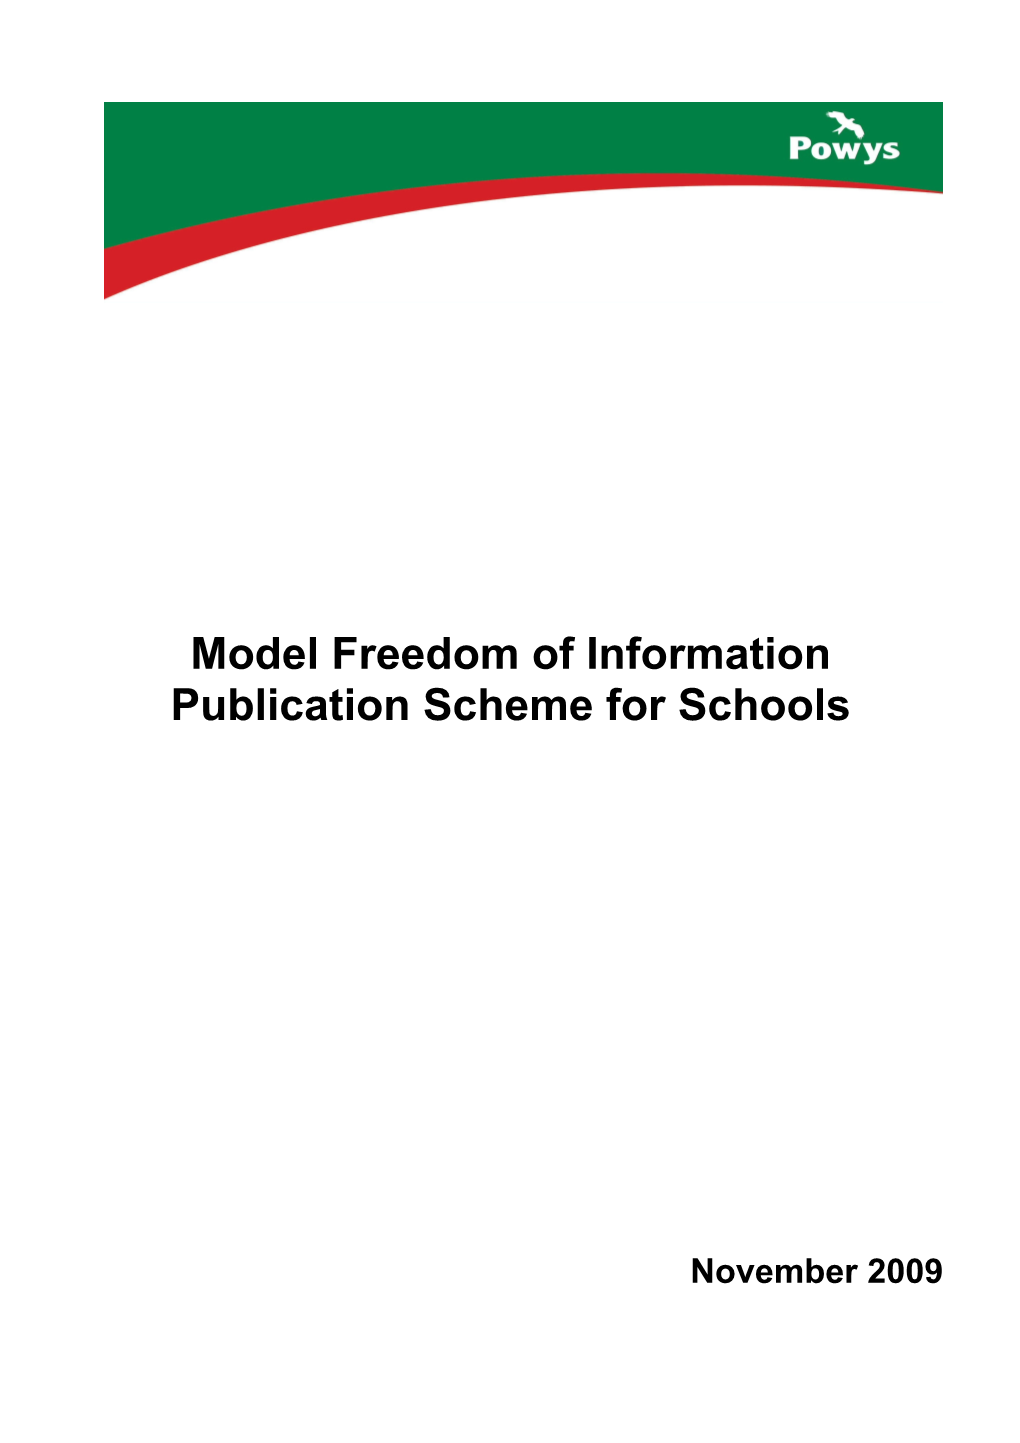 Publication Scheme for Schools